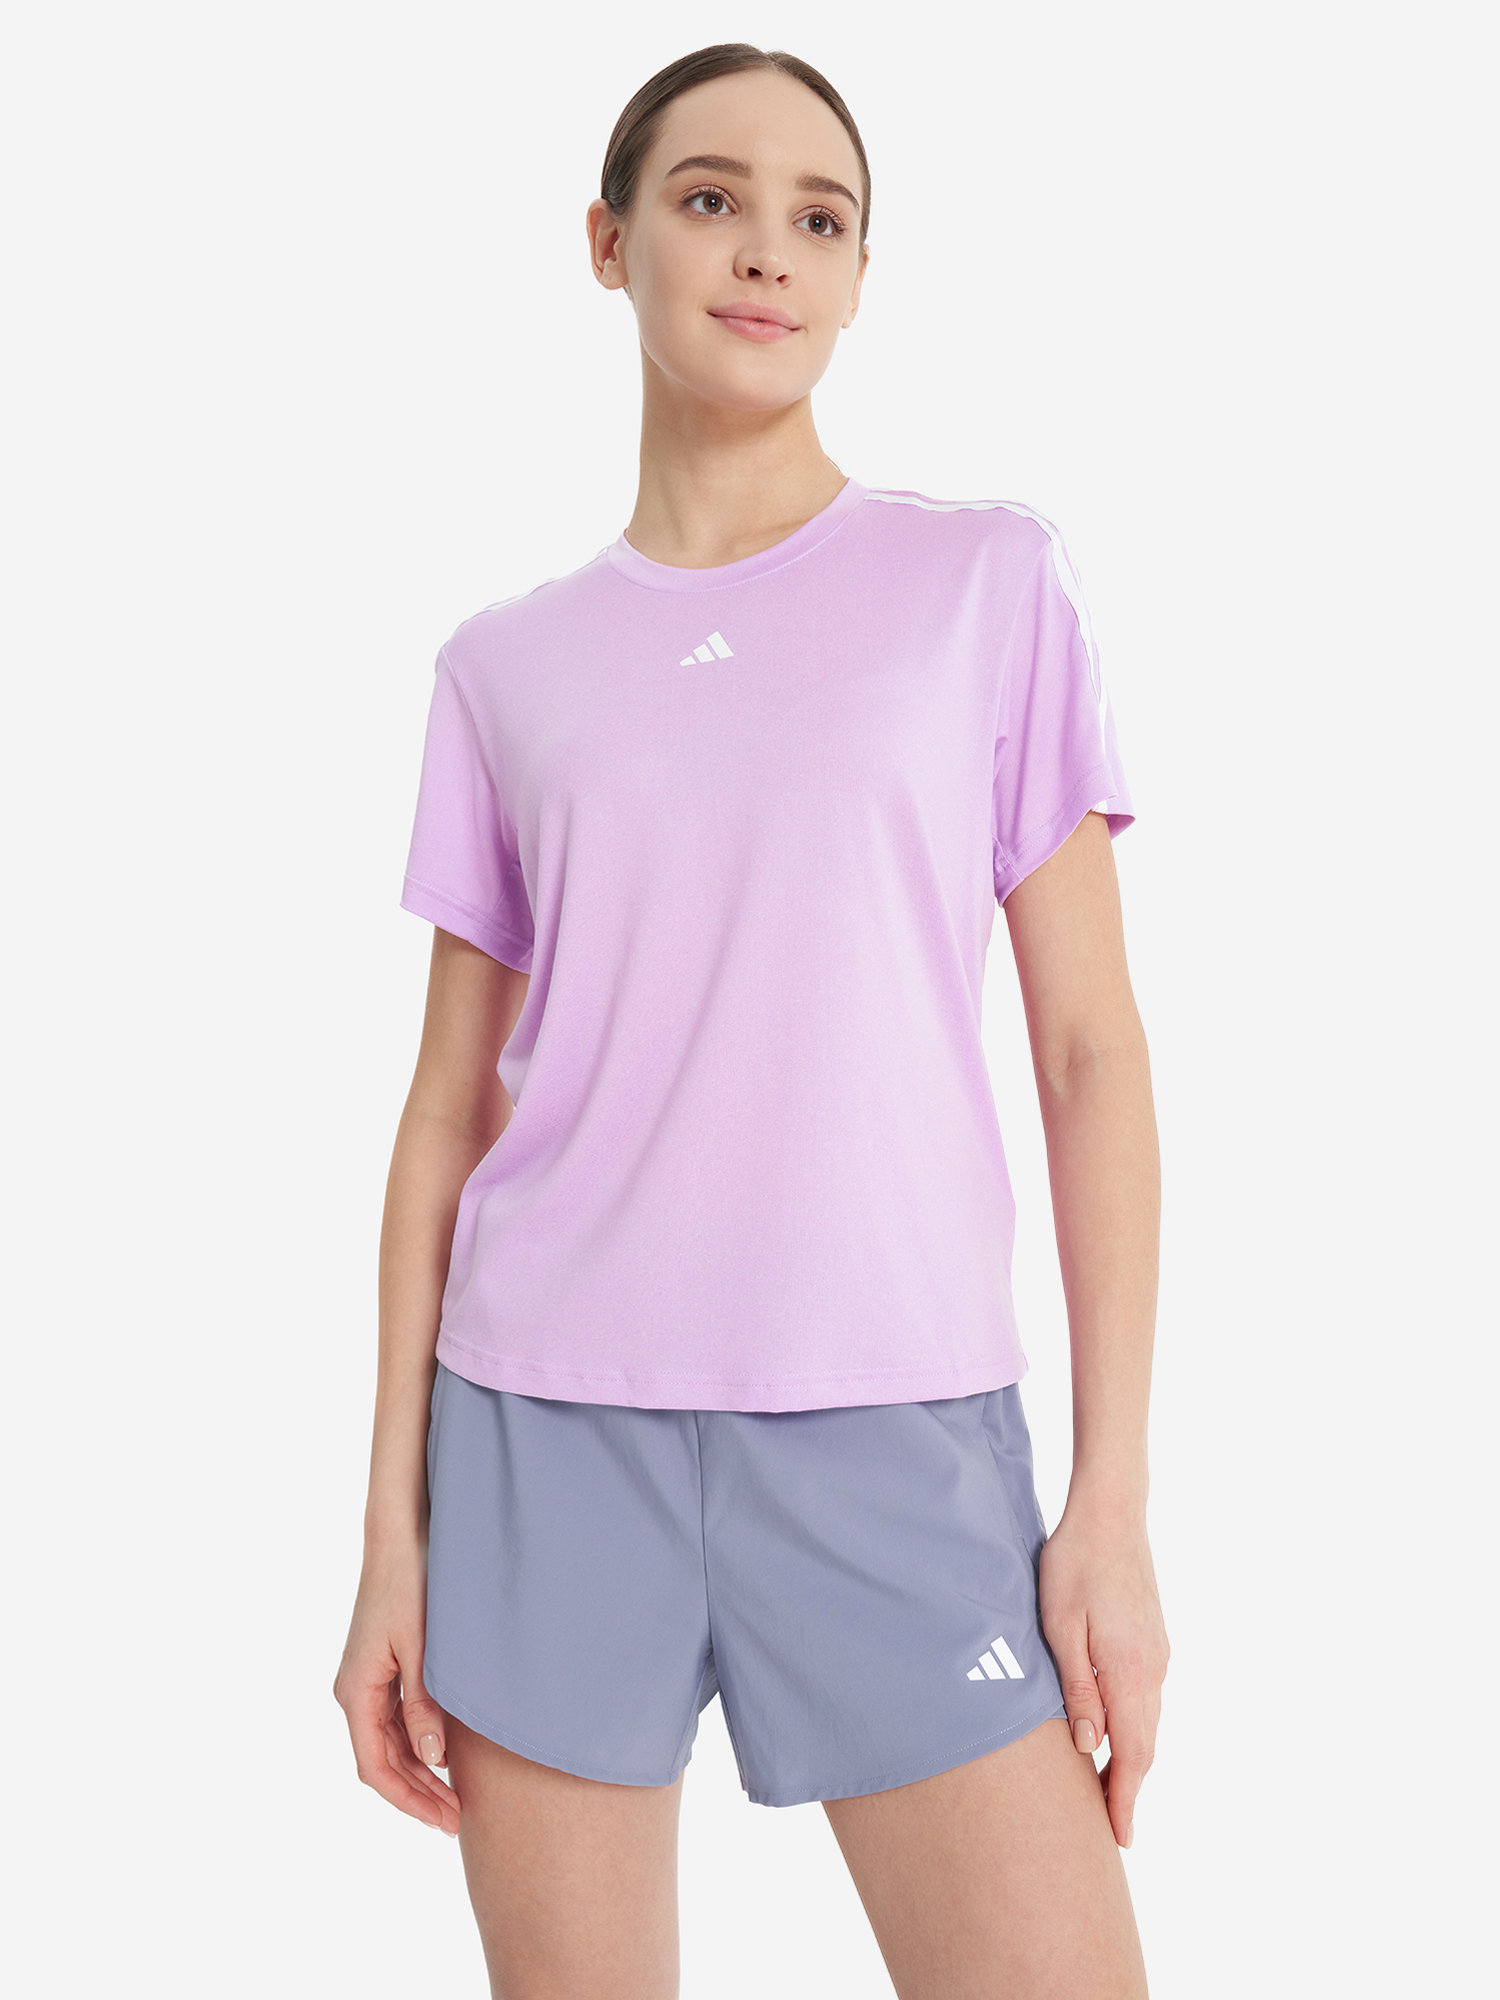 Футболка женская adidas, Фиолетовый пояс для единоборств adidas club adib220 фиолетовый